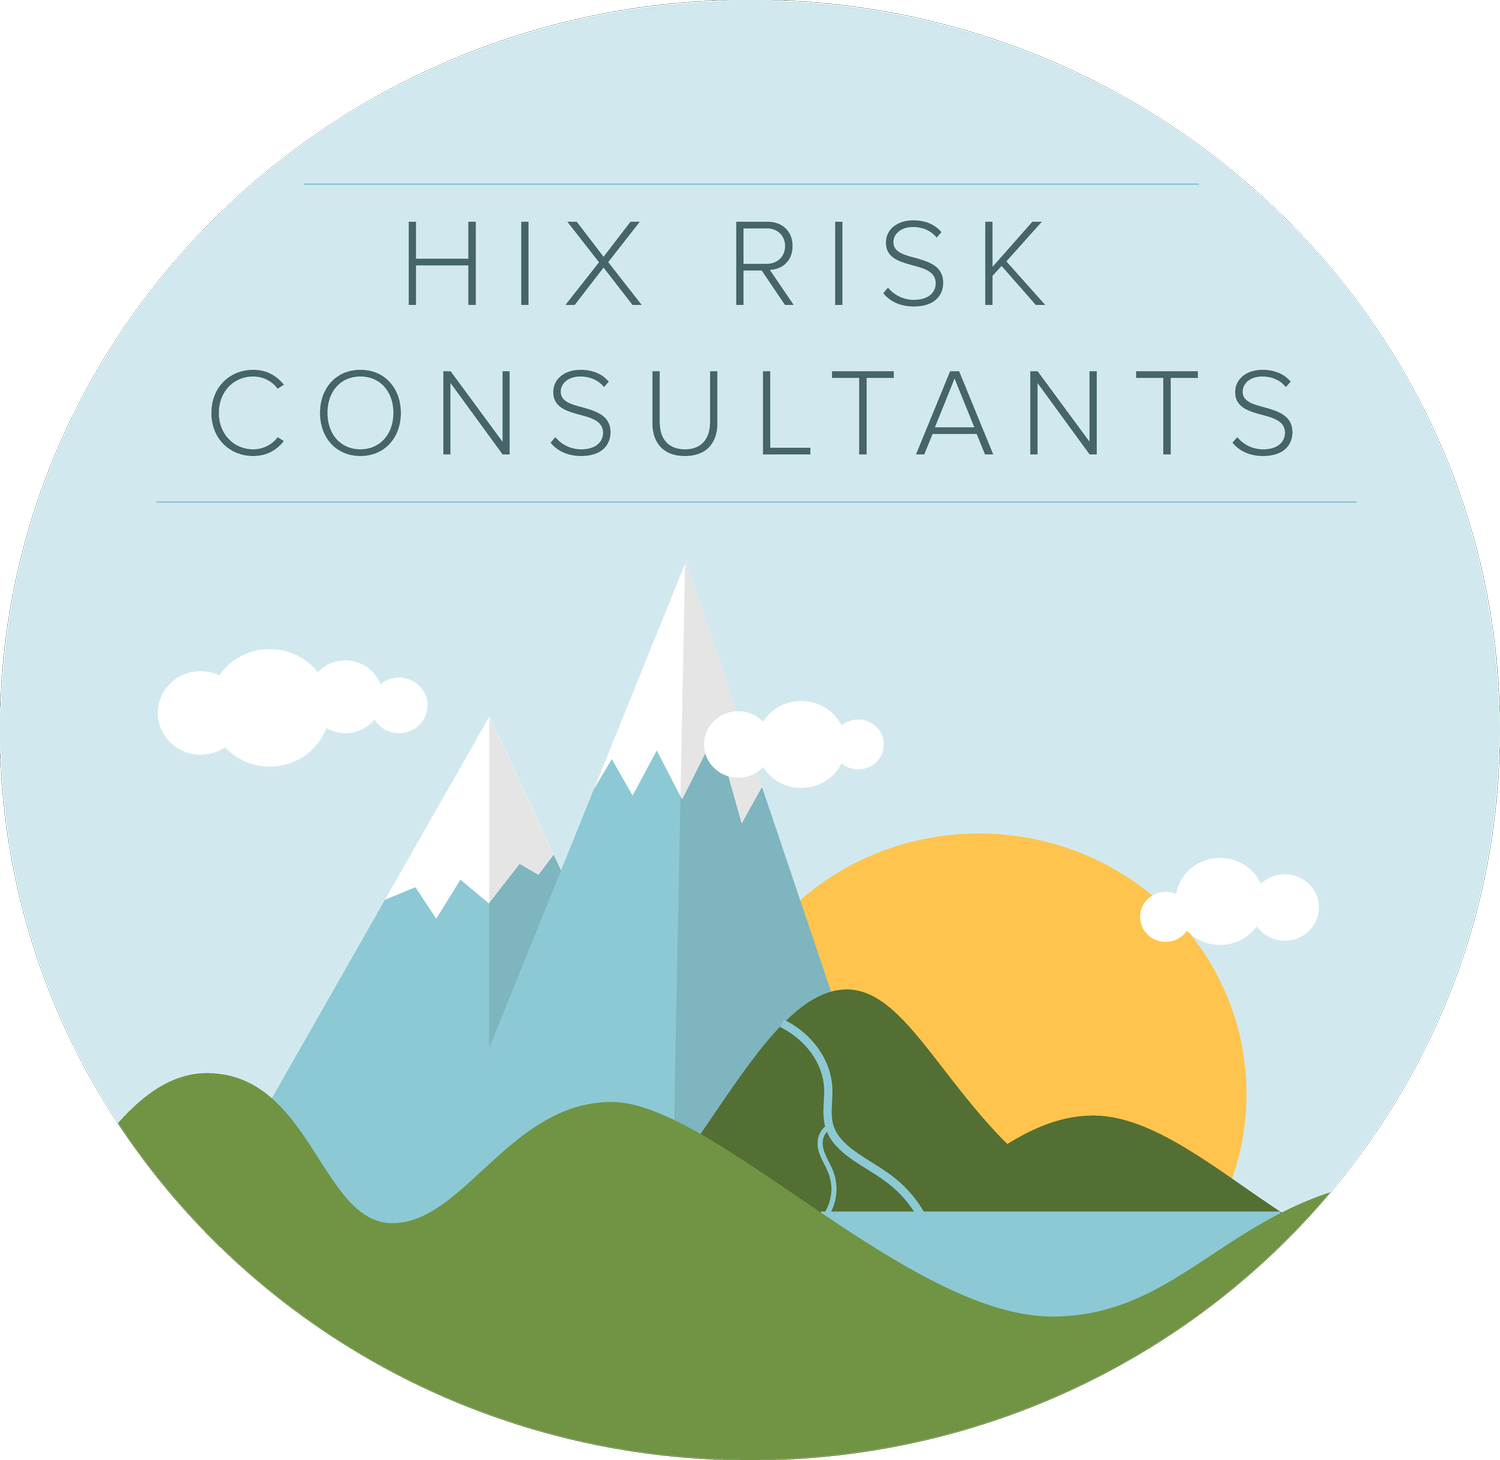 Hix Risk Consultants